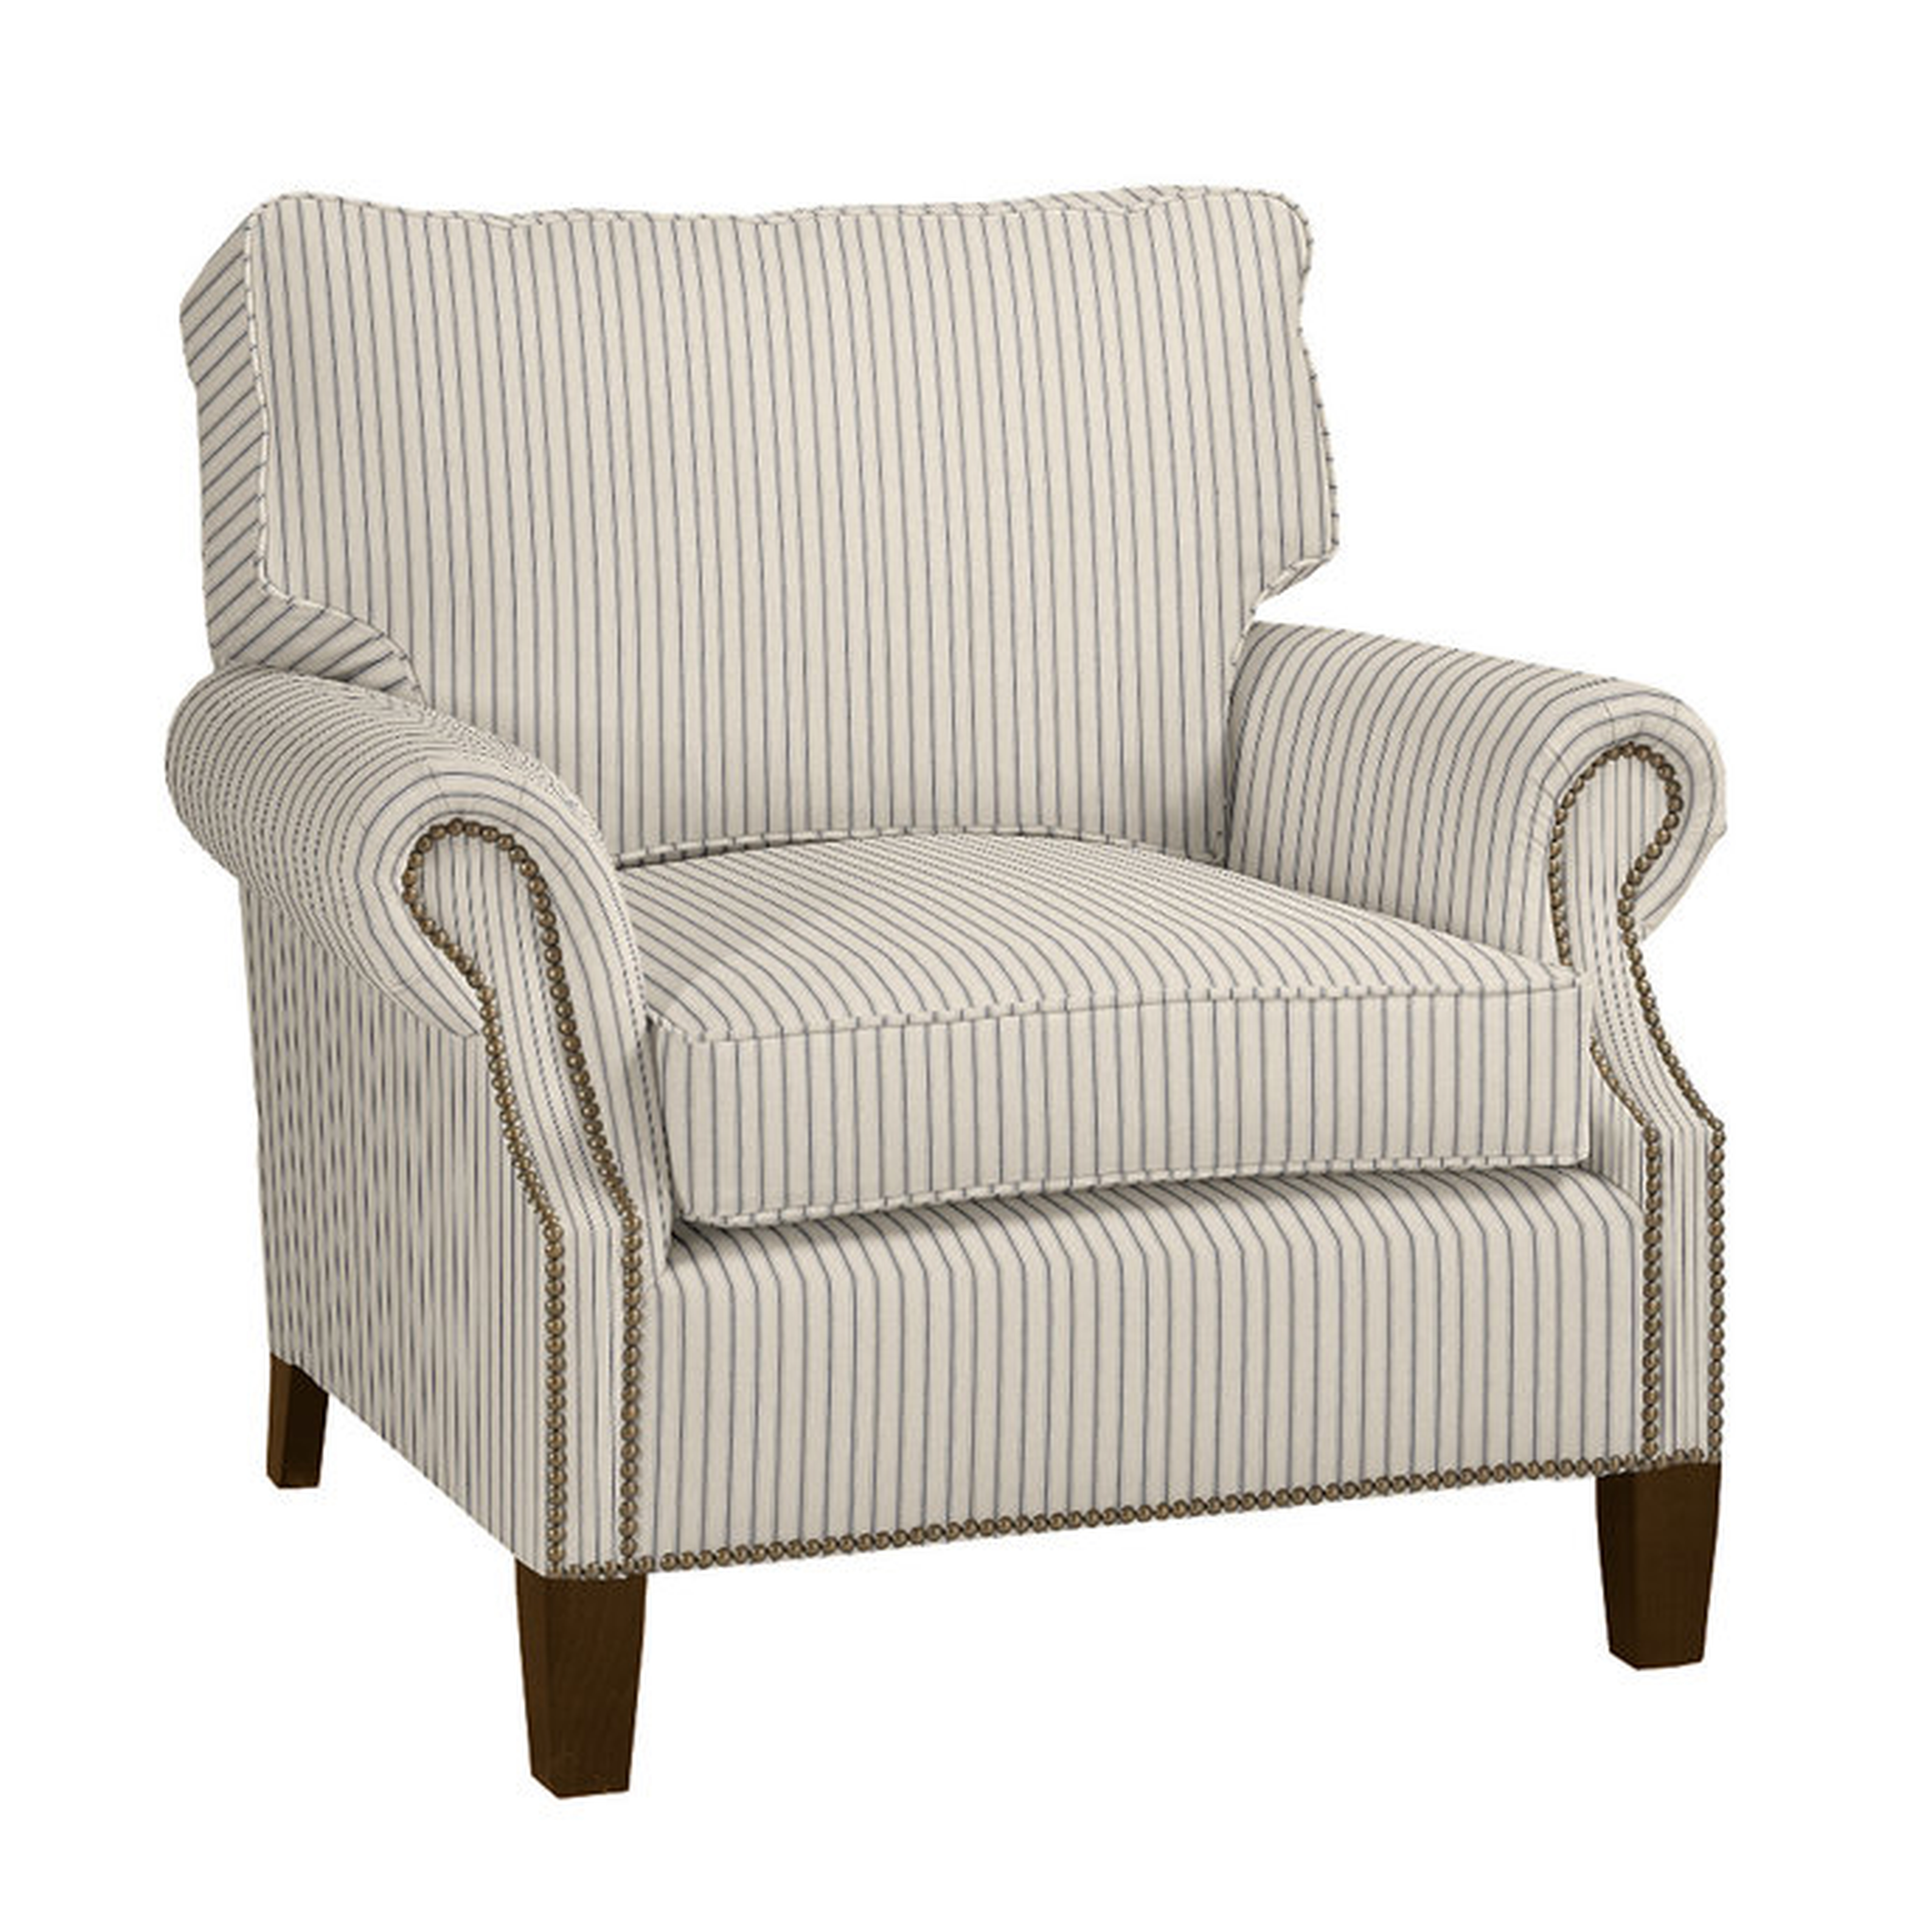 Stratford Chair - Vintage Ticking Stripe Black - Ballard Designs